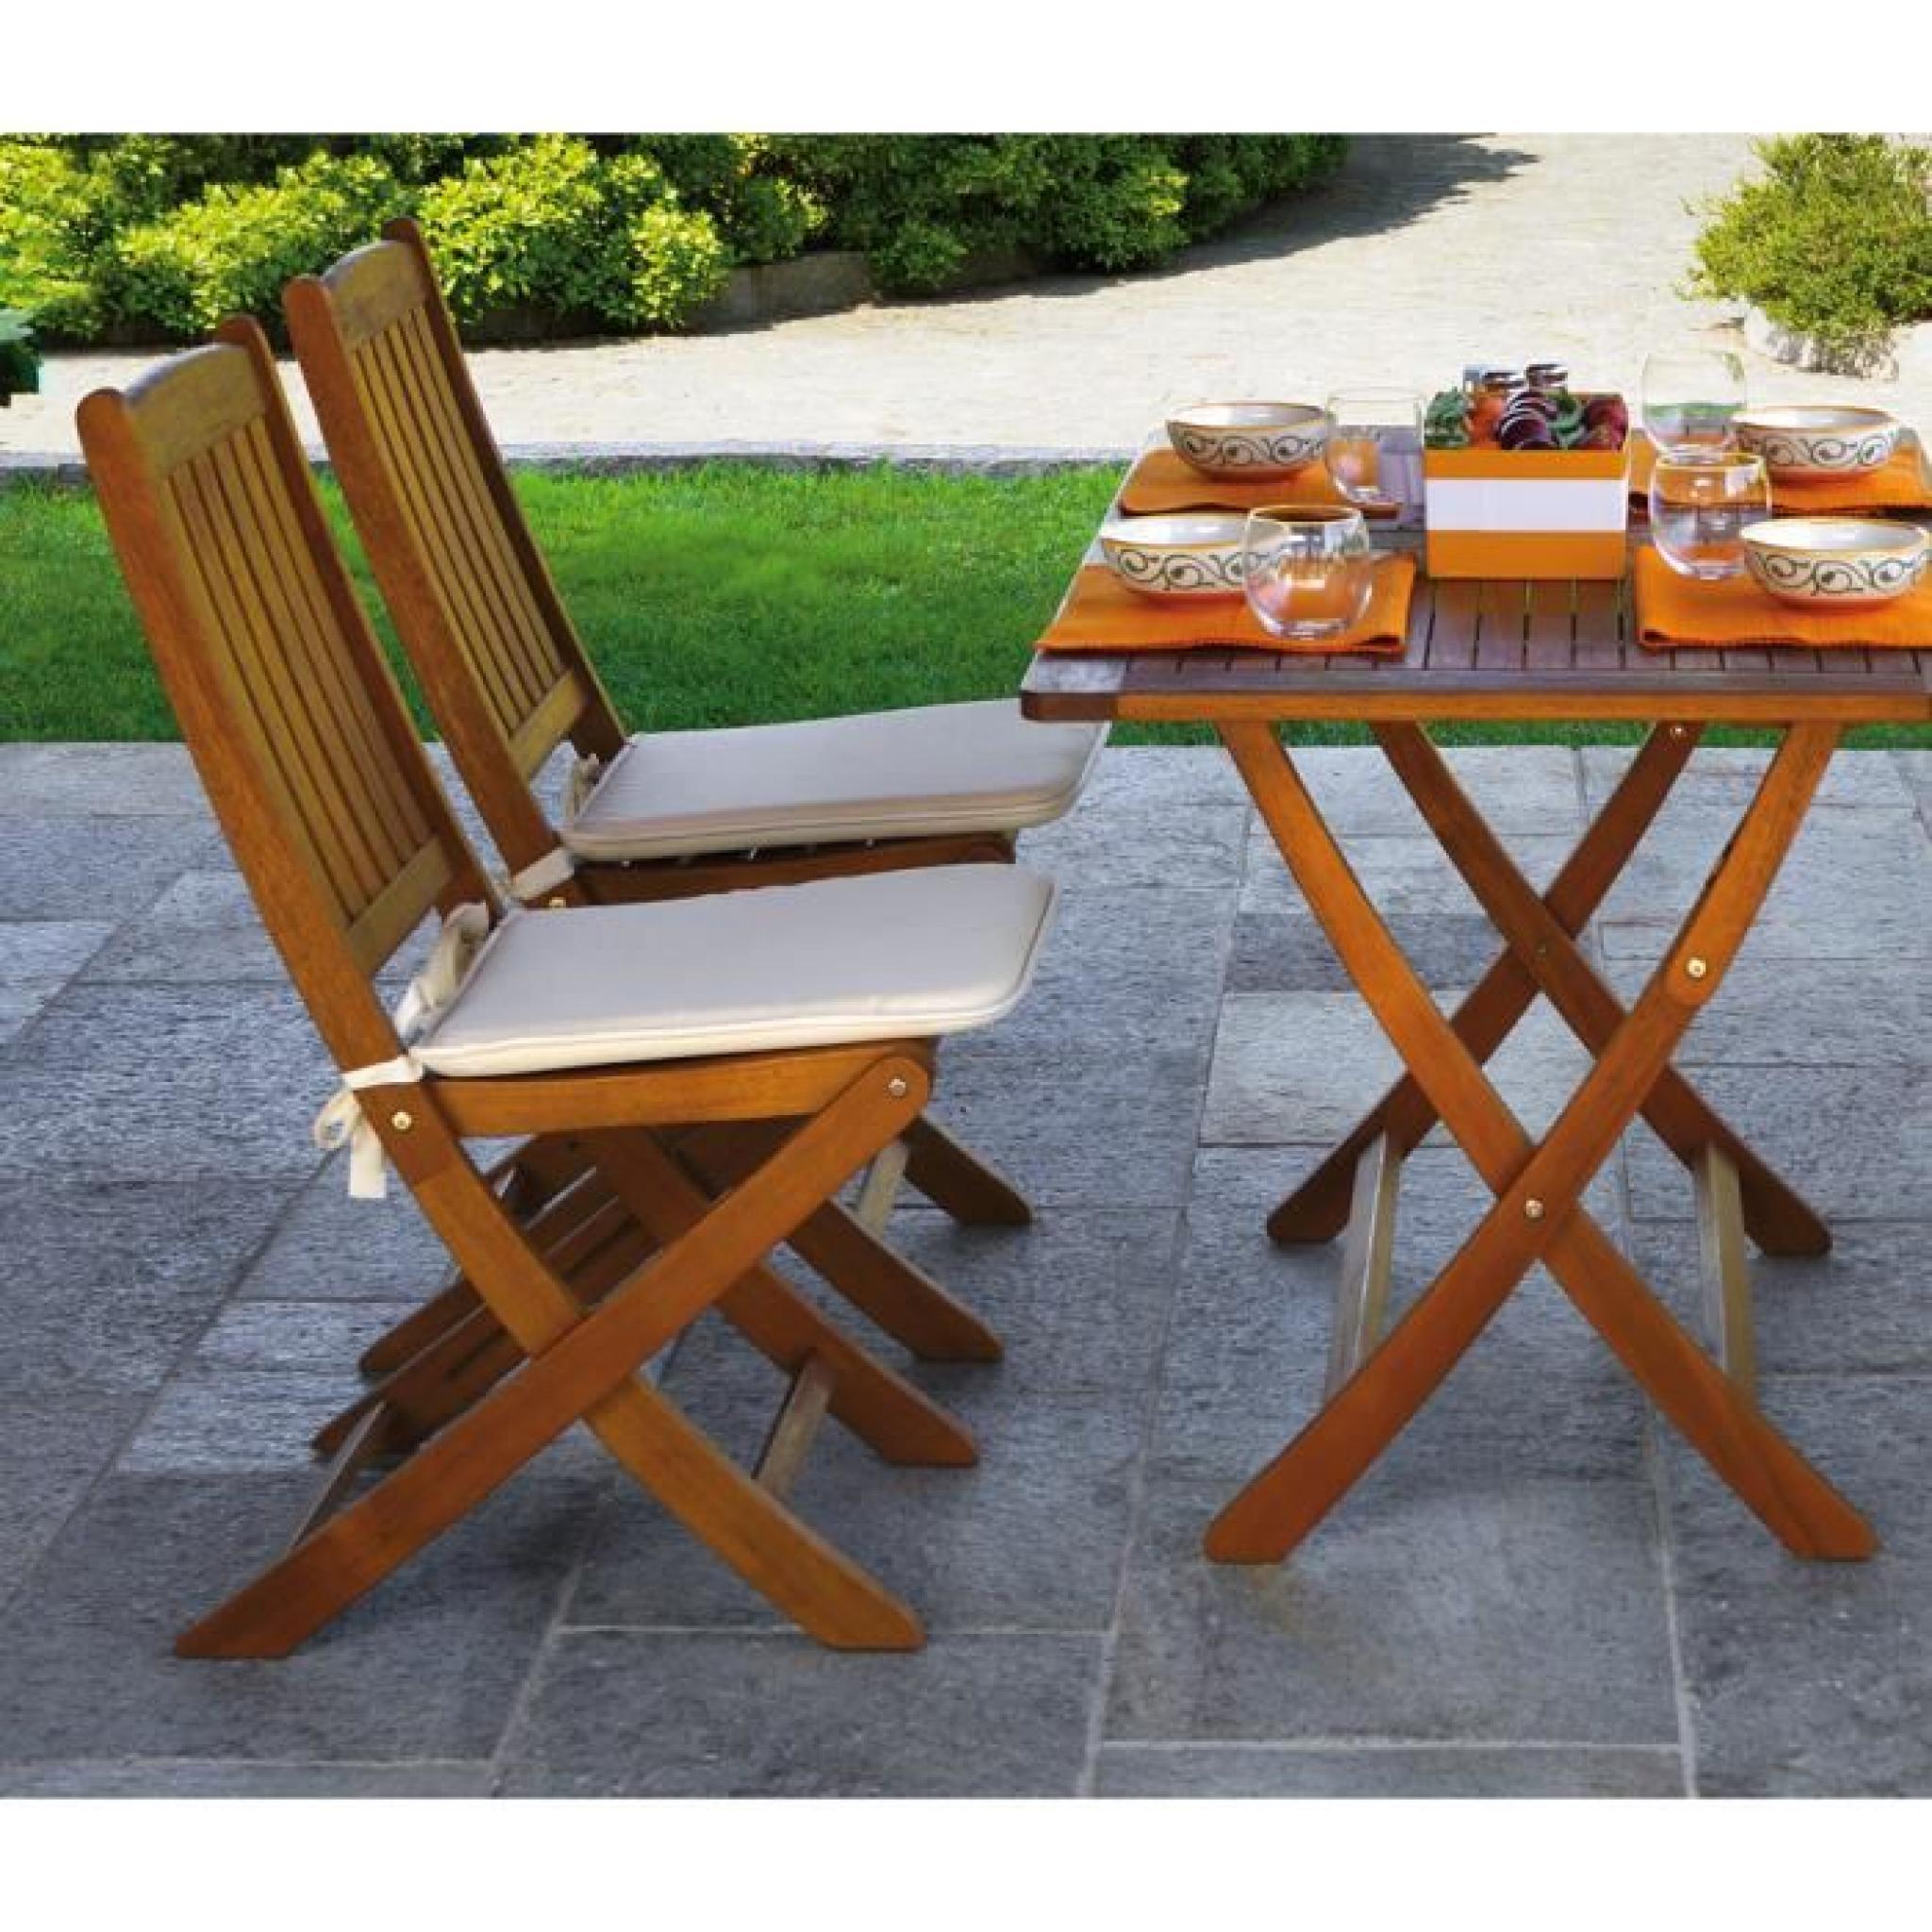 Chaise pliante pour jardin en bois exotique coloris bois naturel - Dim : H 92 x L 45 x P 58 cm pas cher